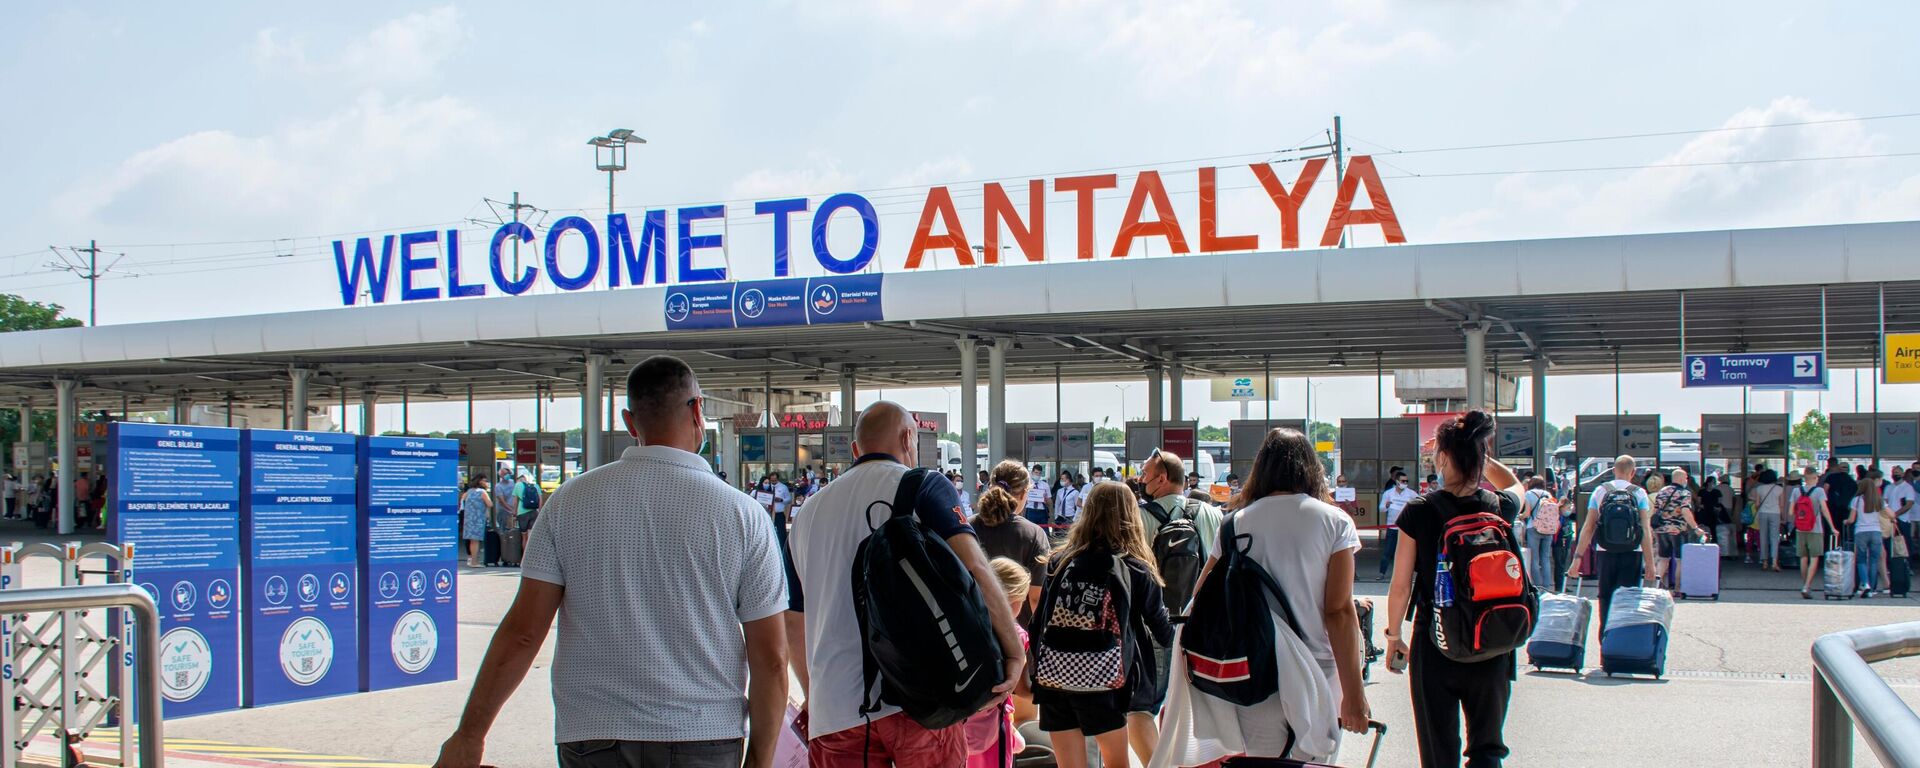 Antalya'da turizm verilerindeki artış devam ediyor. Antalya Valiliği İl Kültür ve Turizm Müdürlüğü'nden alınan verilere göre 1 Ocak-30 Nisan arası şehri hava yoluyla ziyaret eden turist sayısı 2021 yılına göre yüzde 162 arttı. - Sputnik Türkiye, 1920, 20.03.2023